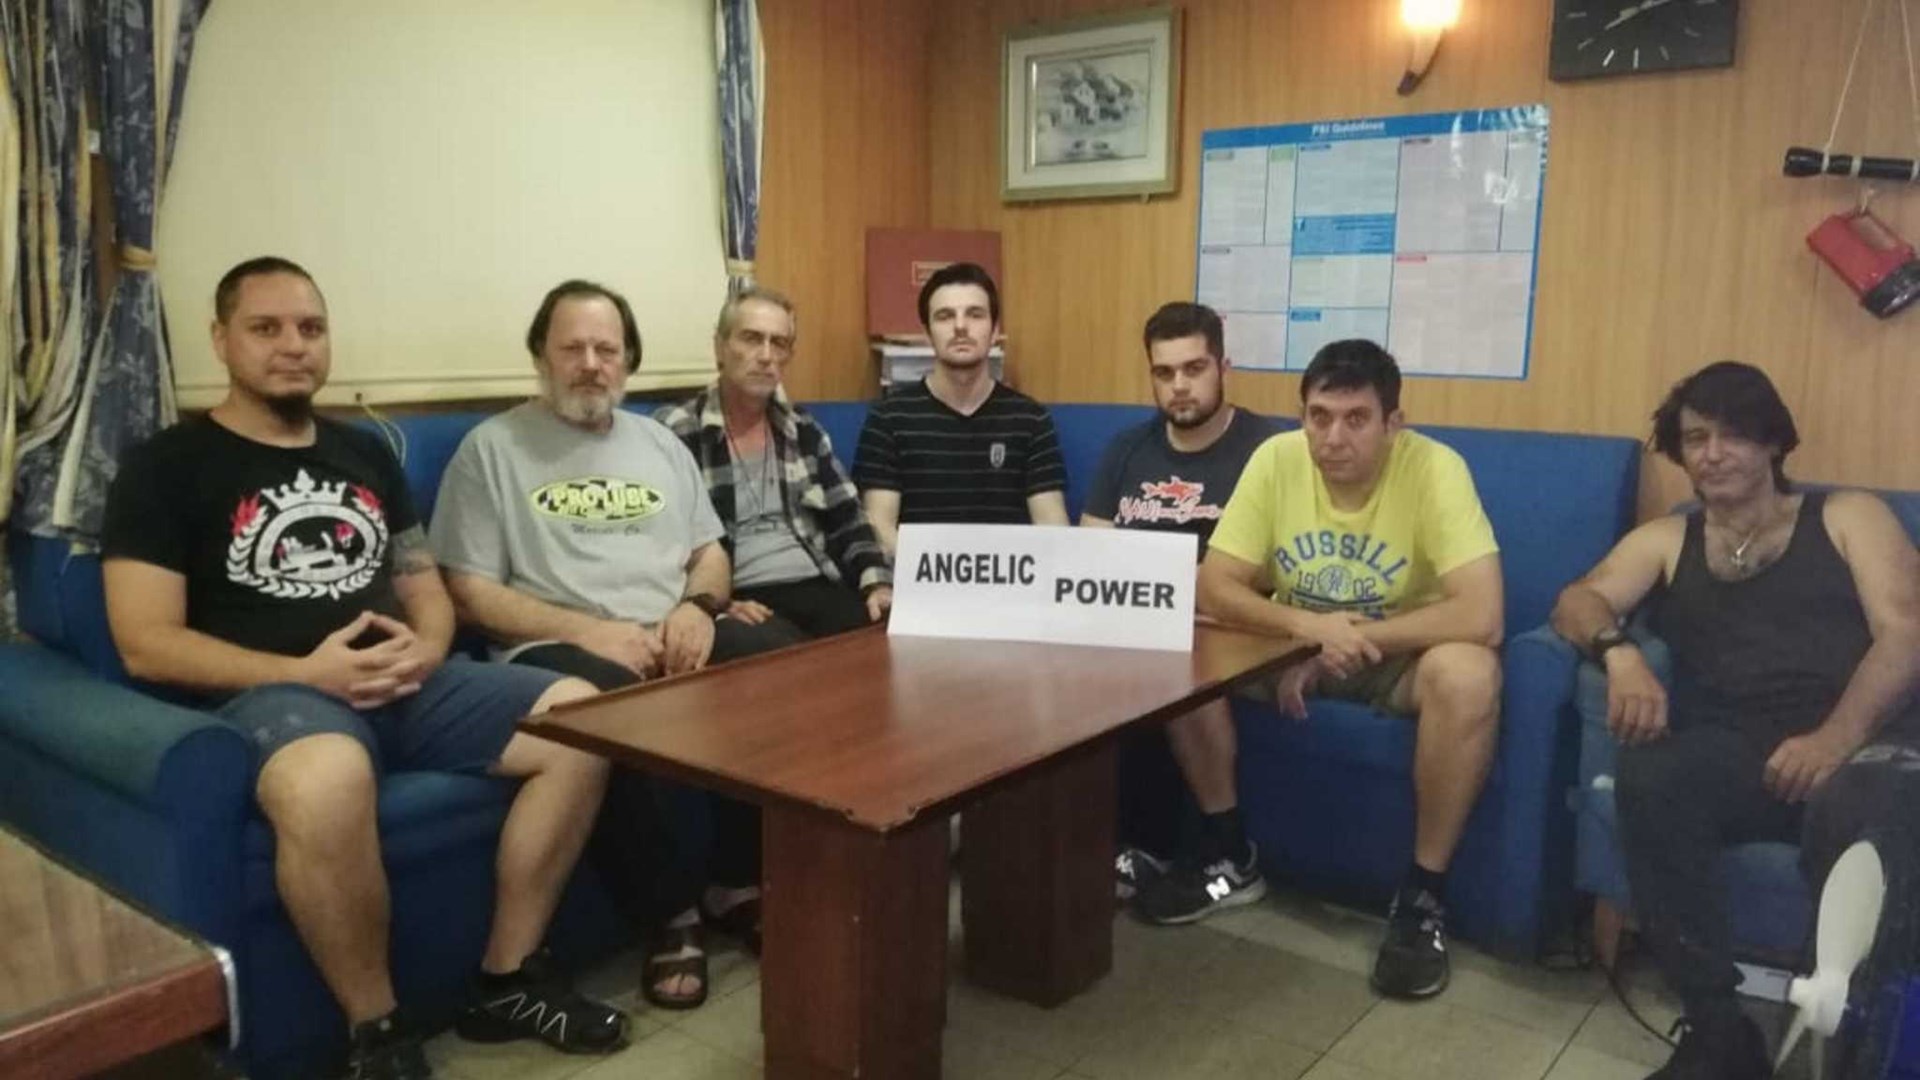 Επιστρέφουν στην Ελλάδα επτά Έλληνες ναυτικοί του πλοίου “ANGELIC POWER”